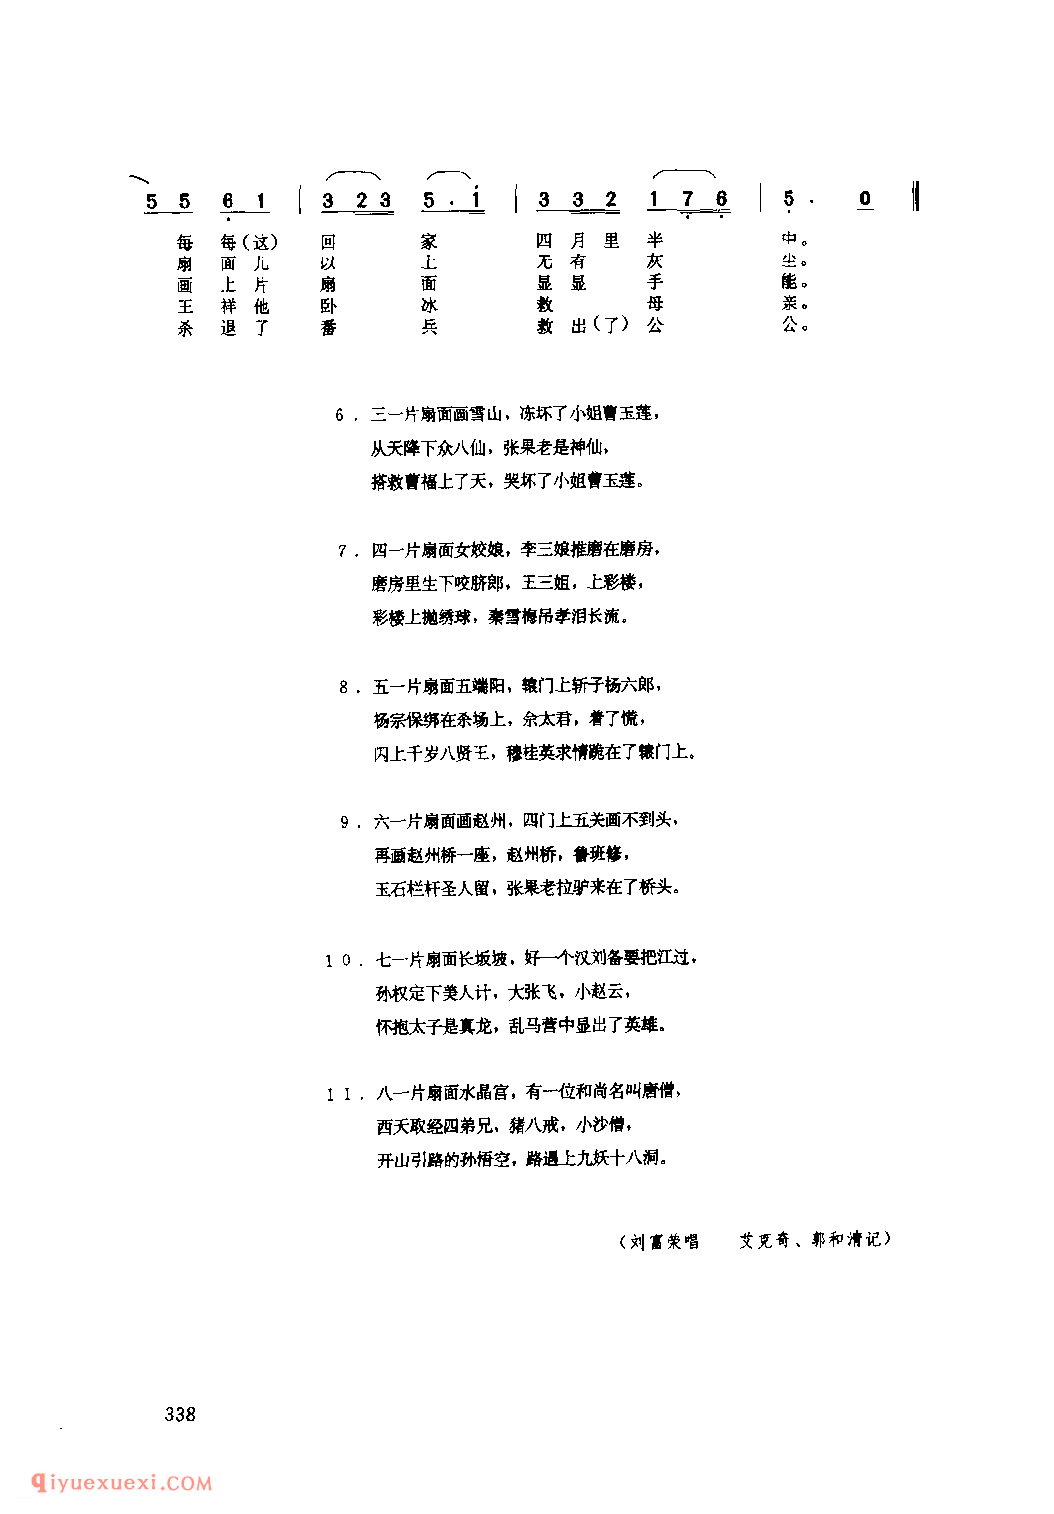 画扇面(一) 1979年 子洲县_小调_陕西民歌简谱